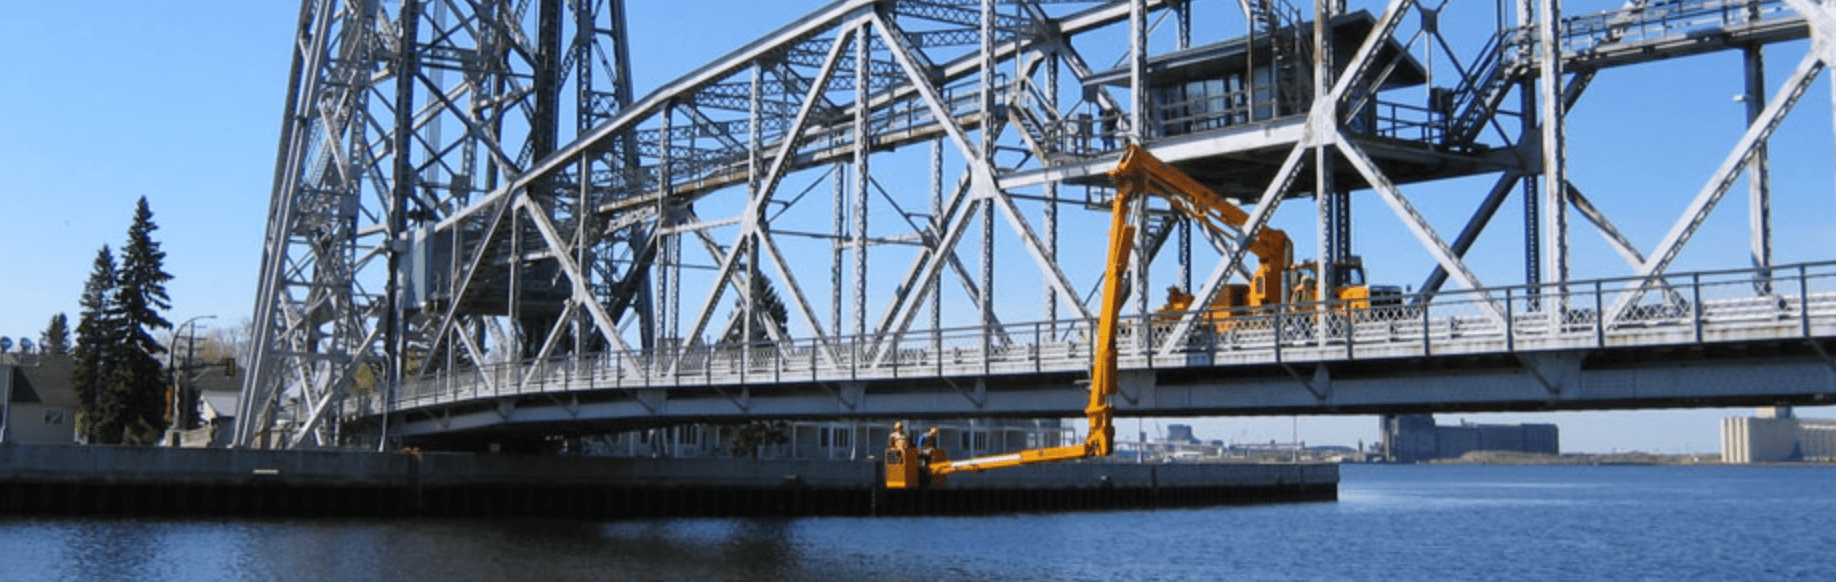 Bridge Inspection Equipment Aspen Aerials